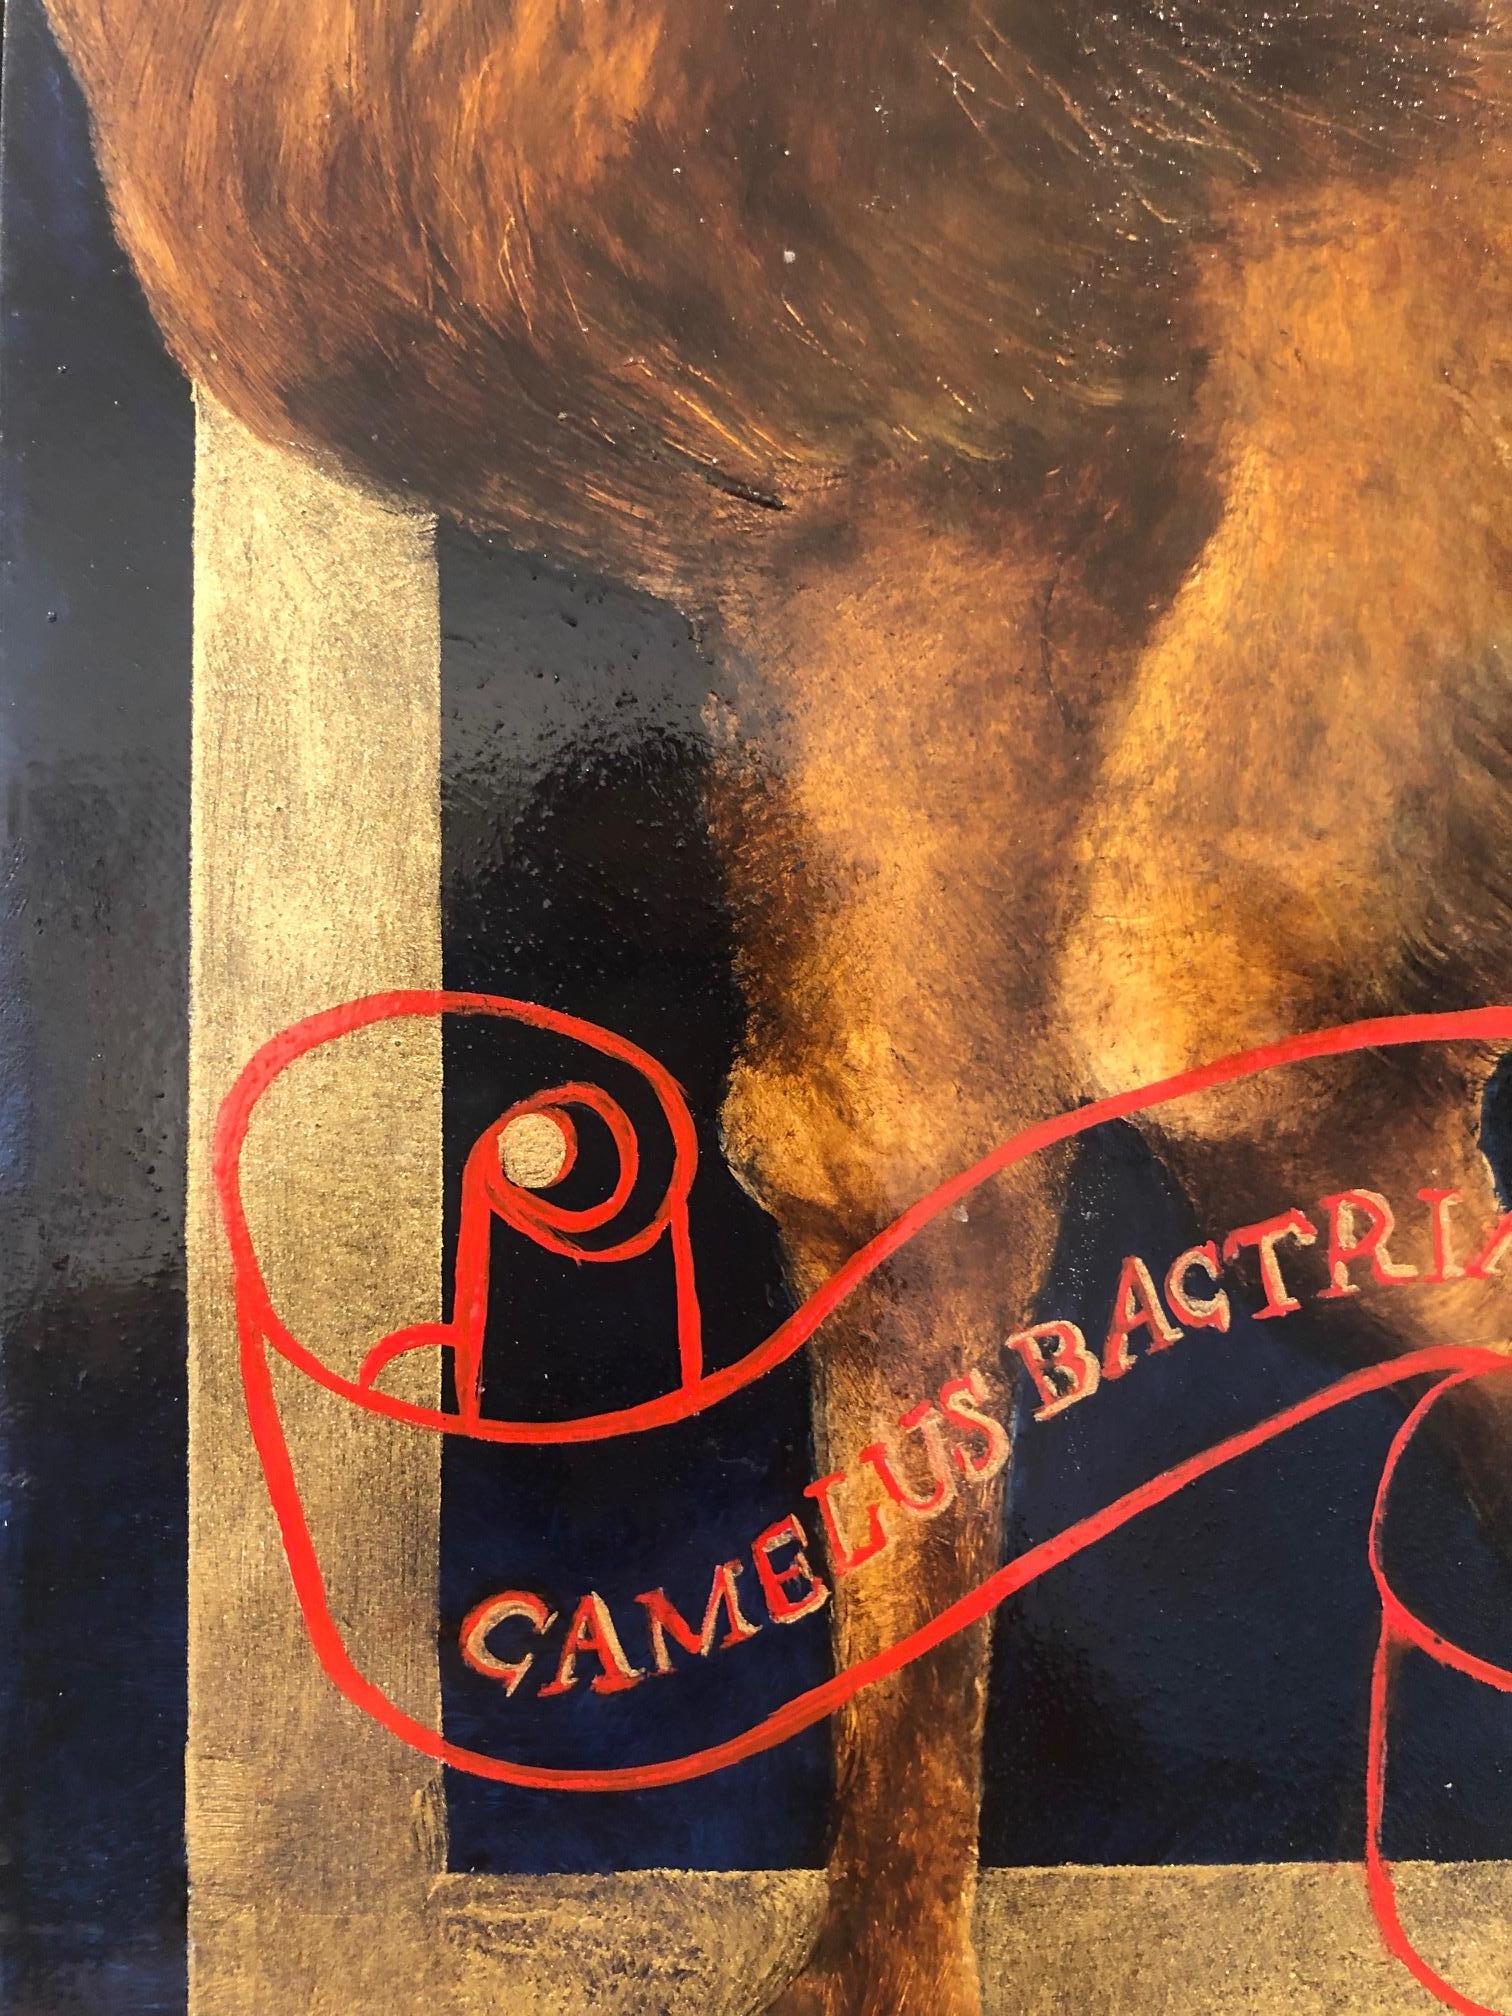 CAMEL - Öl und Blattgold auf Platte mit handlackiertem Rahmen.  (Braun), Still-Life Painting, von Adrienne Sherman